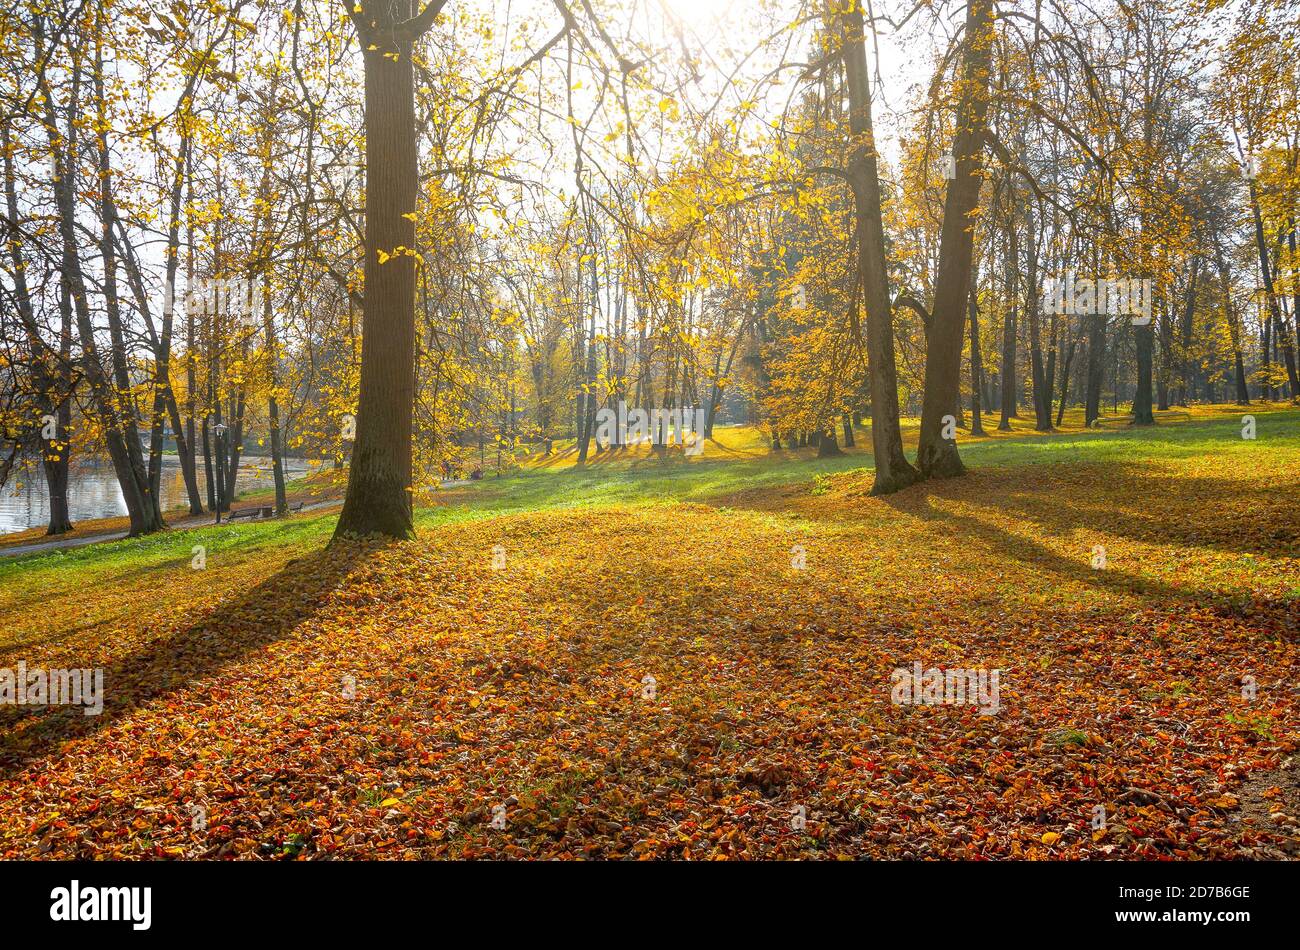 Sonnige Herbstszene mit Land bedeckt von orangefarbenen und roten Blättern im leeren Park. Stockfoto